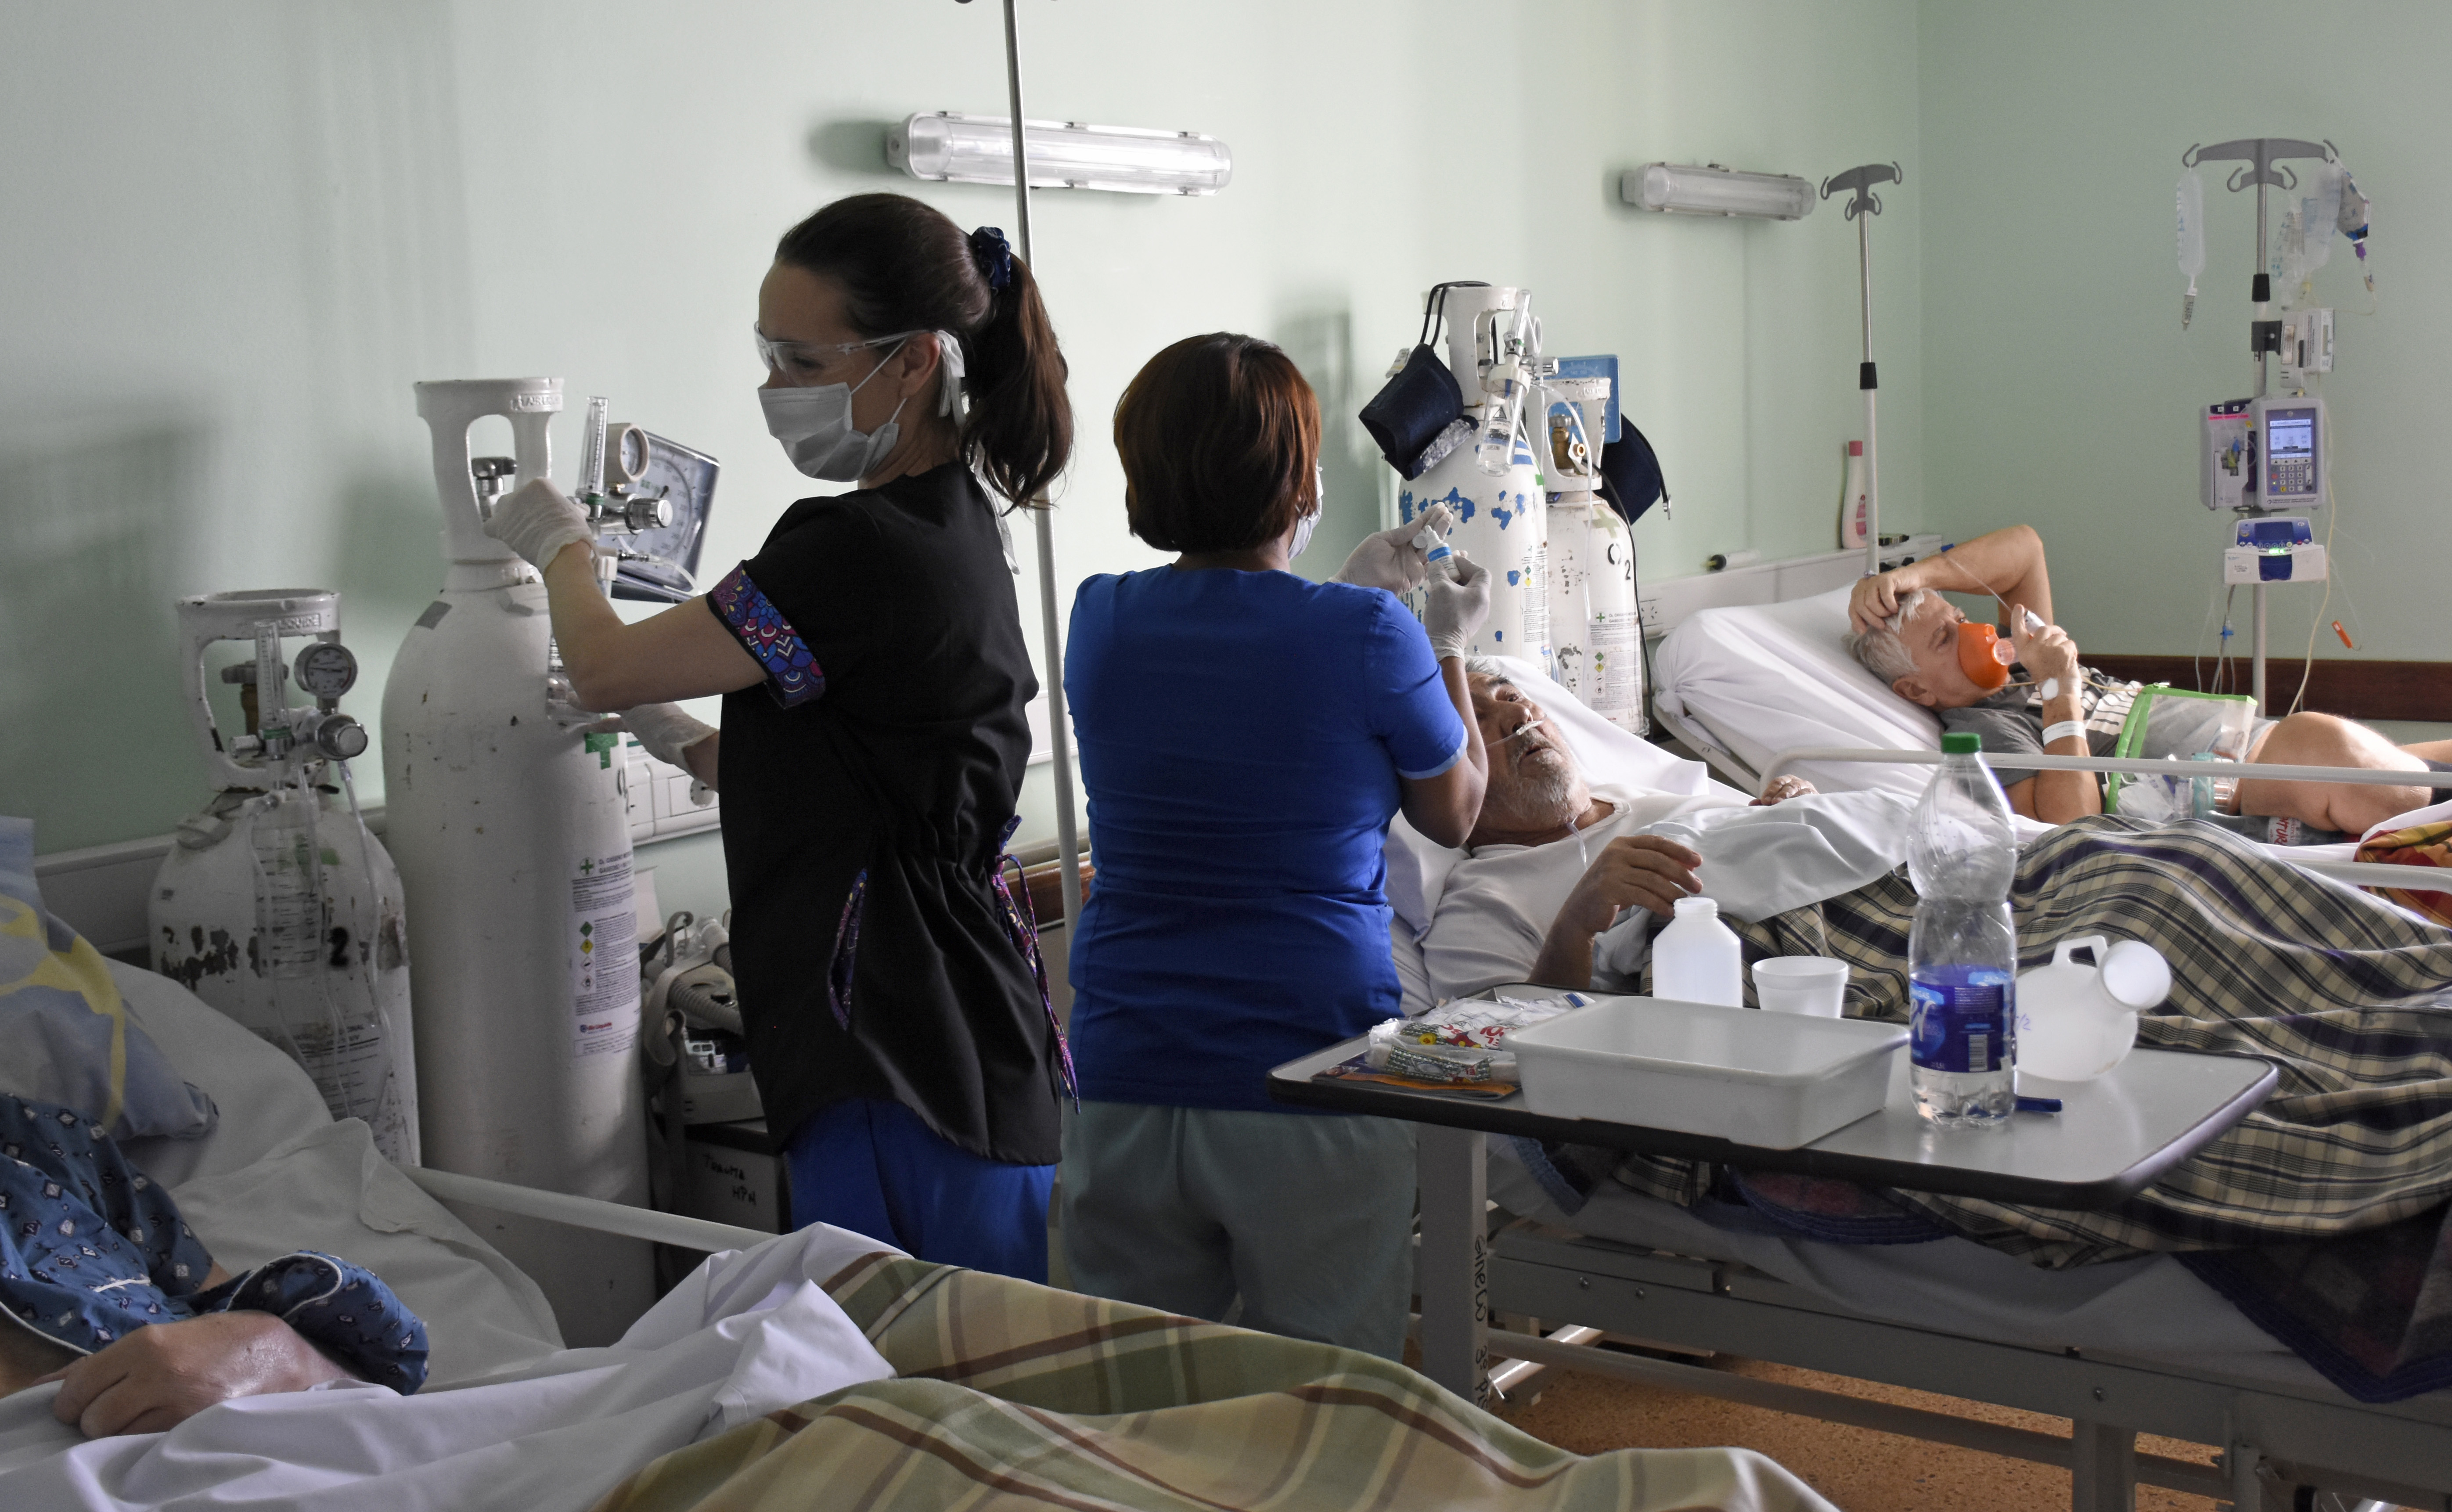 Los trabajadores de la salud son los más exigidos durante la pandemia. Foto: archivo Florencia Salto.